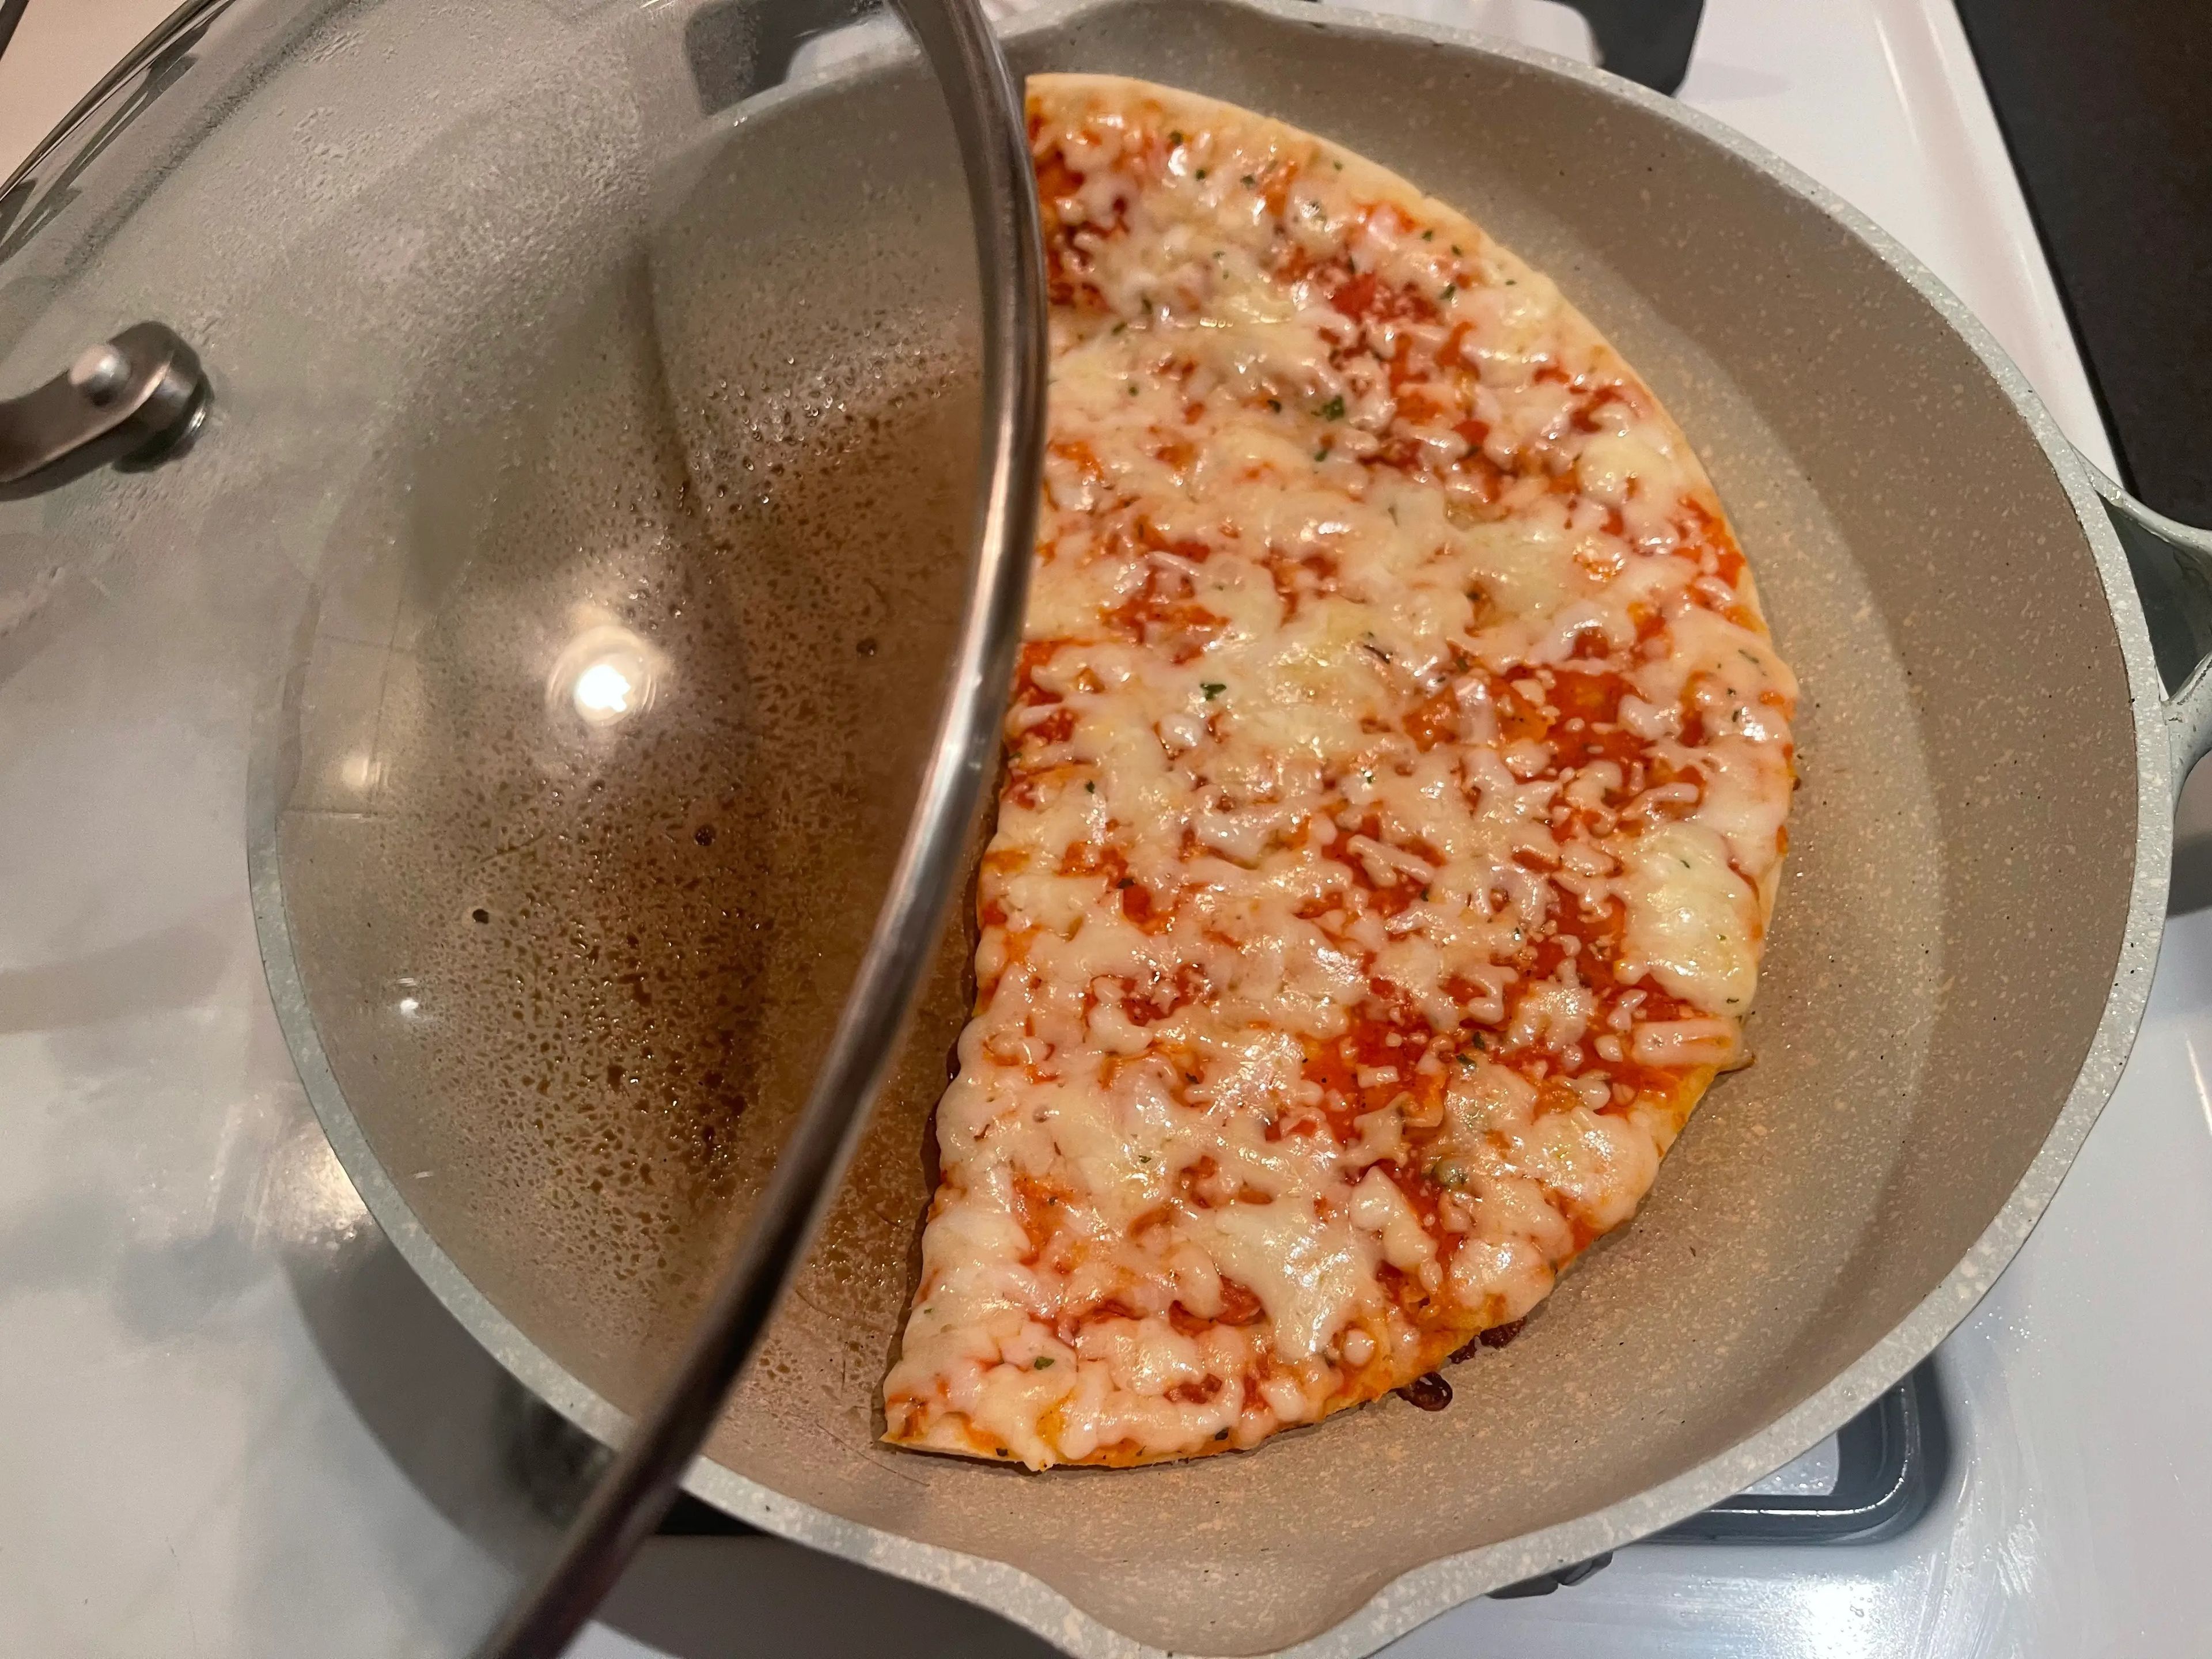 El resultado fue una pizza deliciosa con el queso muy fundido.